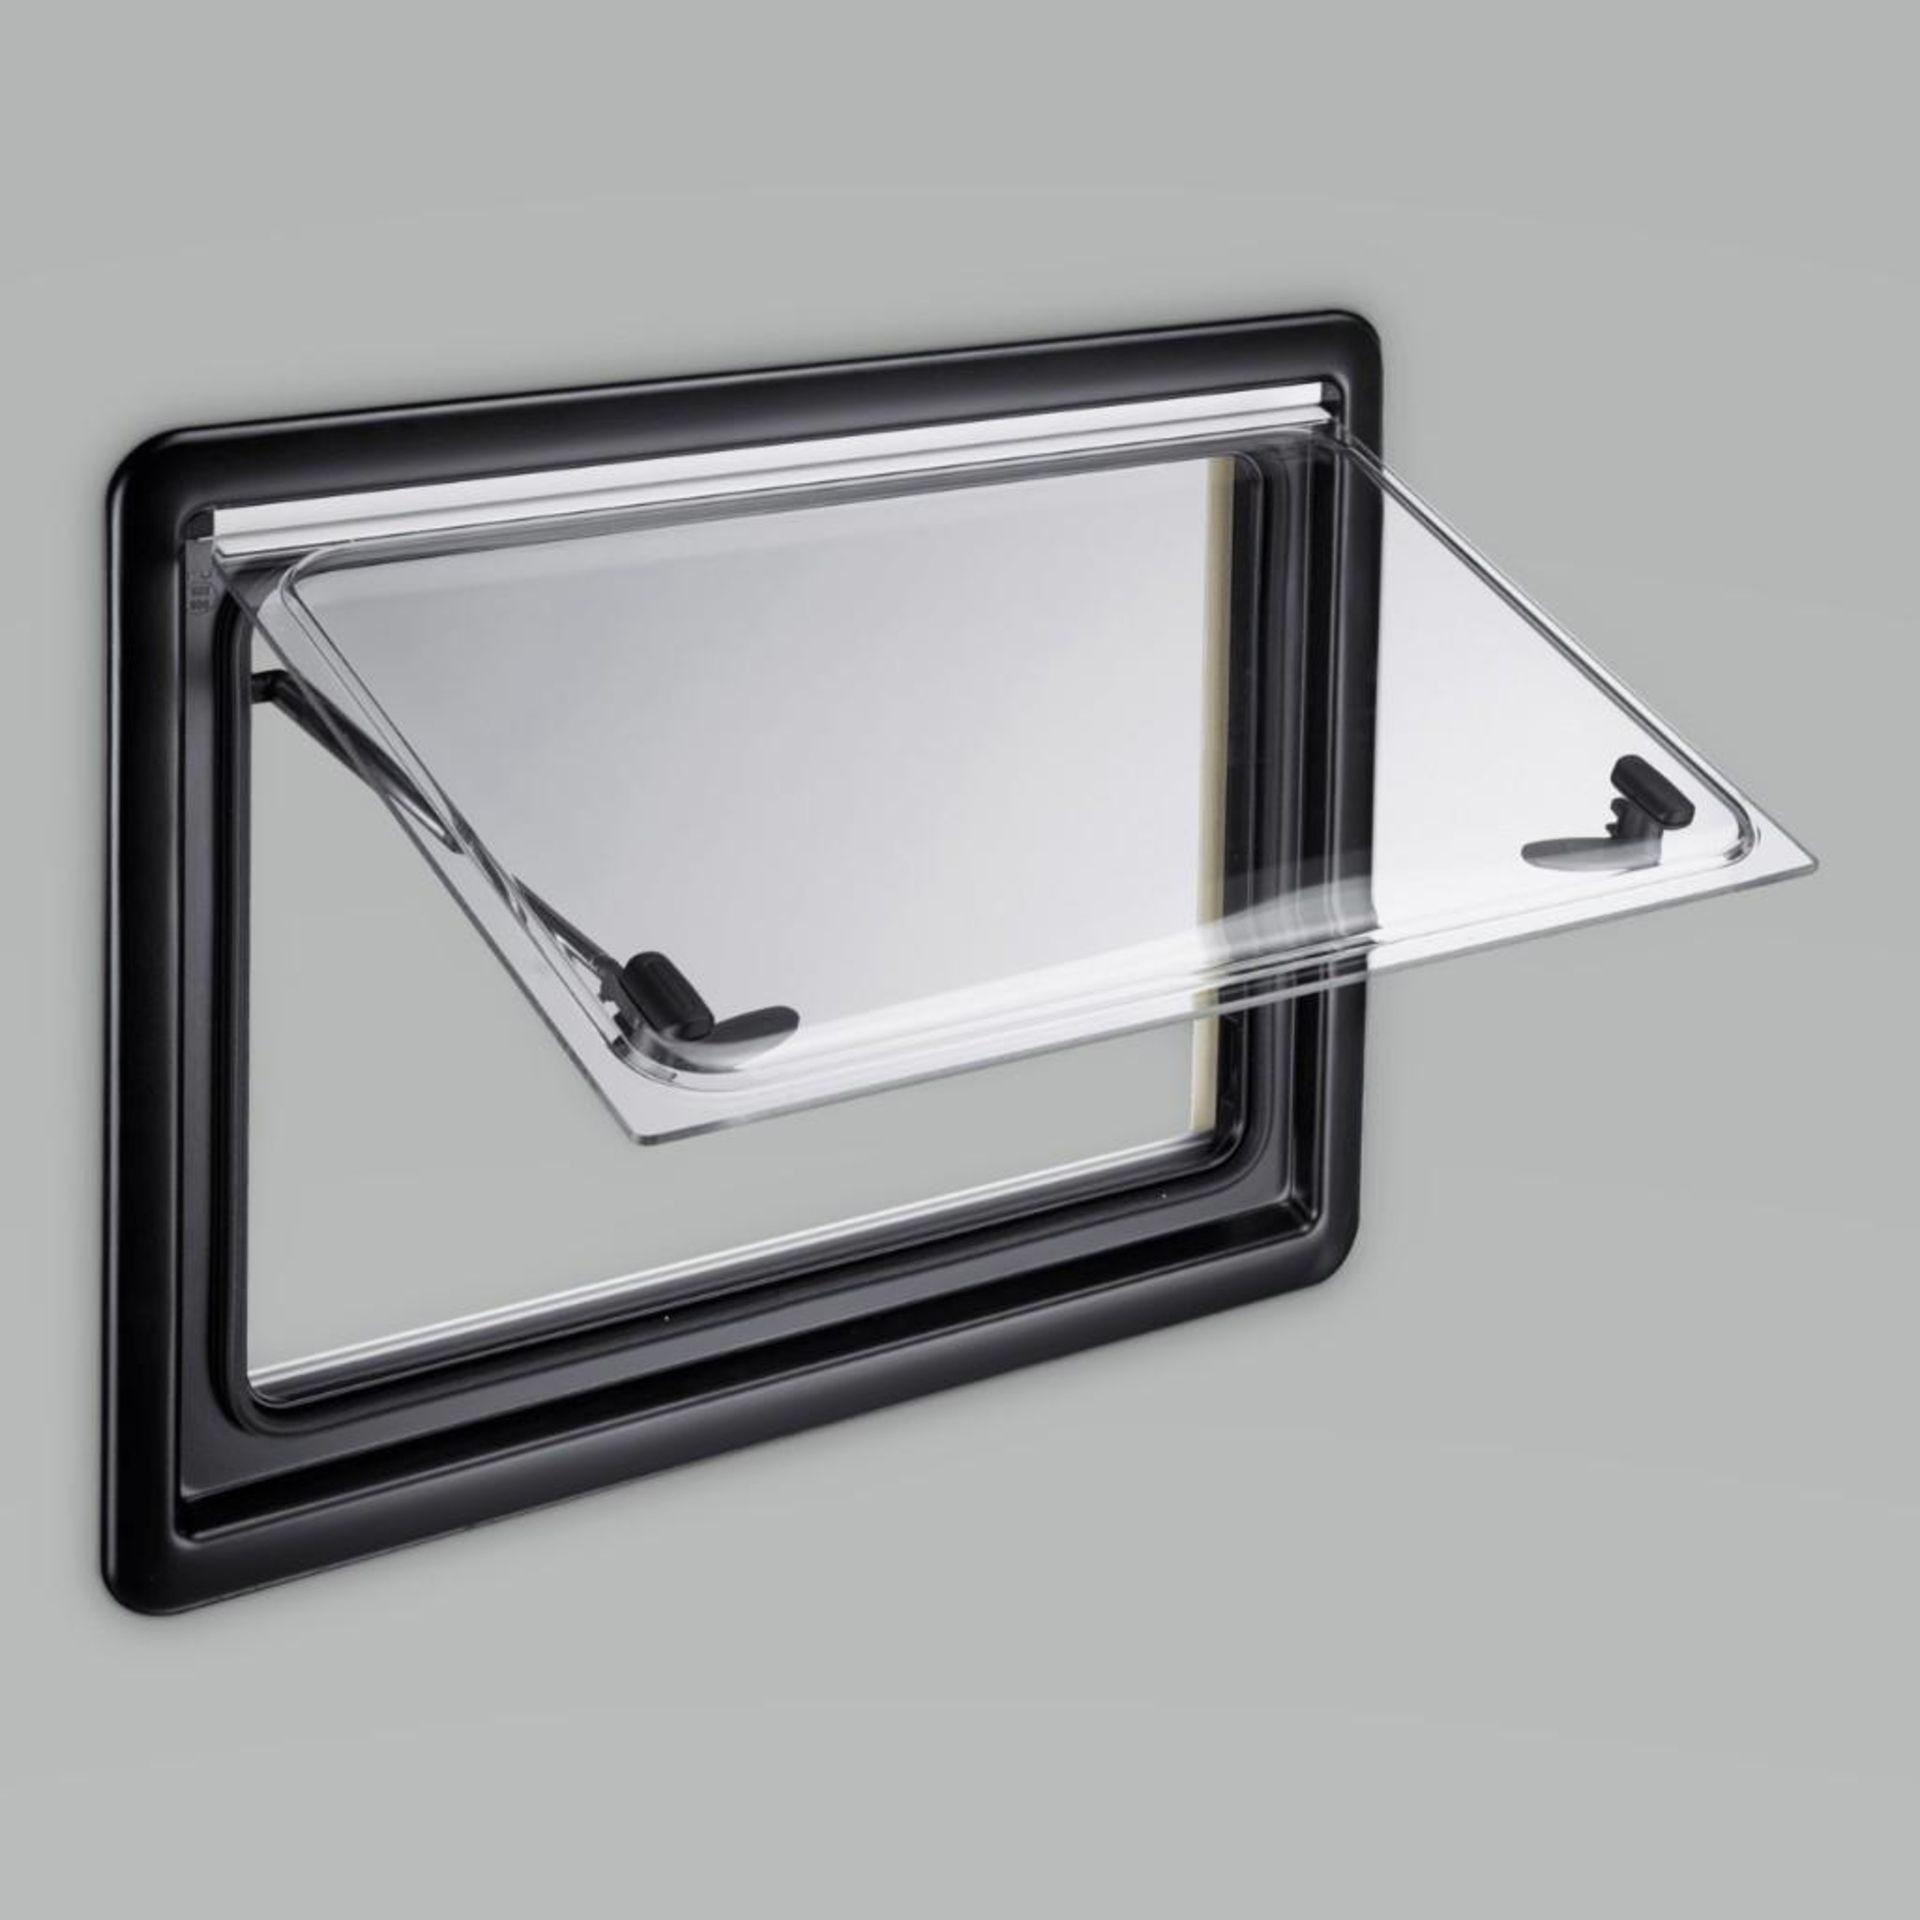 Qty 18 - Dometic window. S4 series. S4DOM0401550F. 800mm x 350mm. 26mm. New in box.